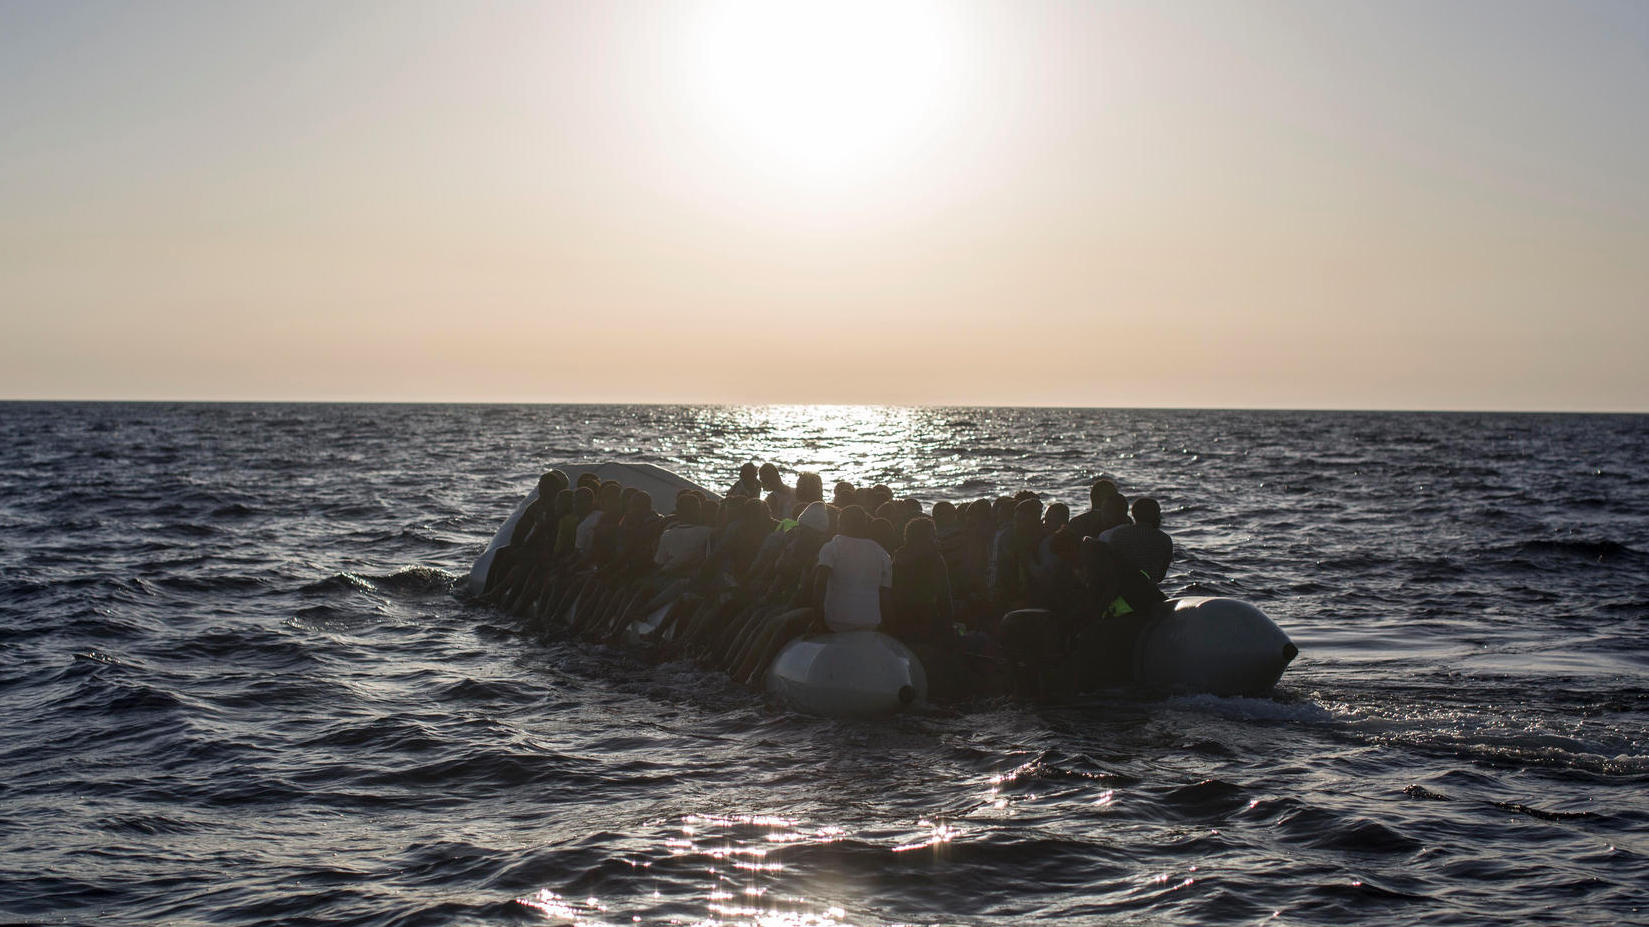 Schlauchboot gerät in Seenot – 119 Migranten gerettet